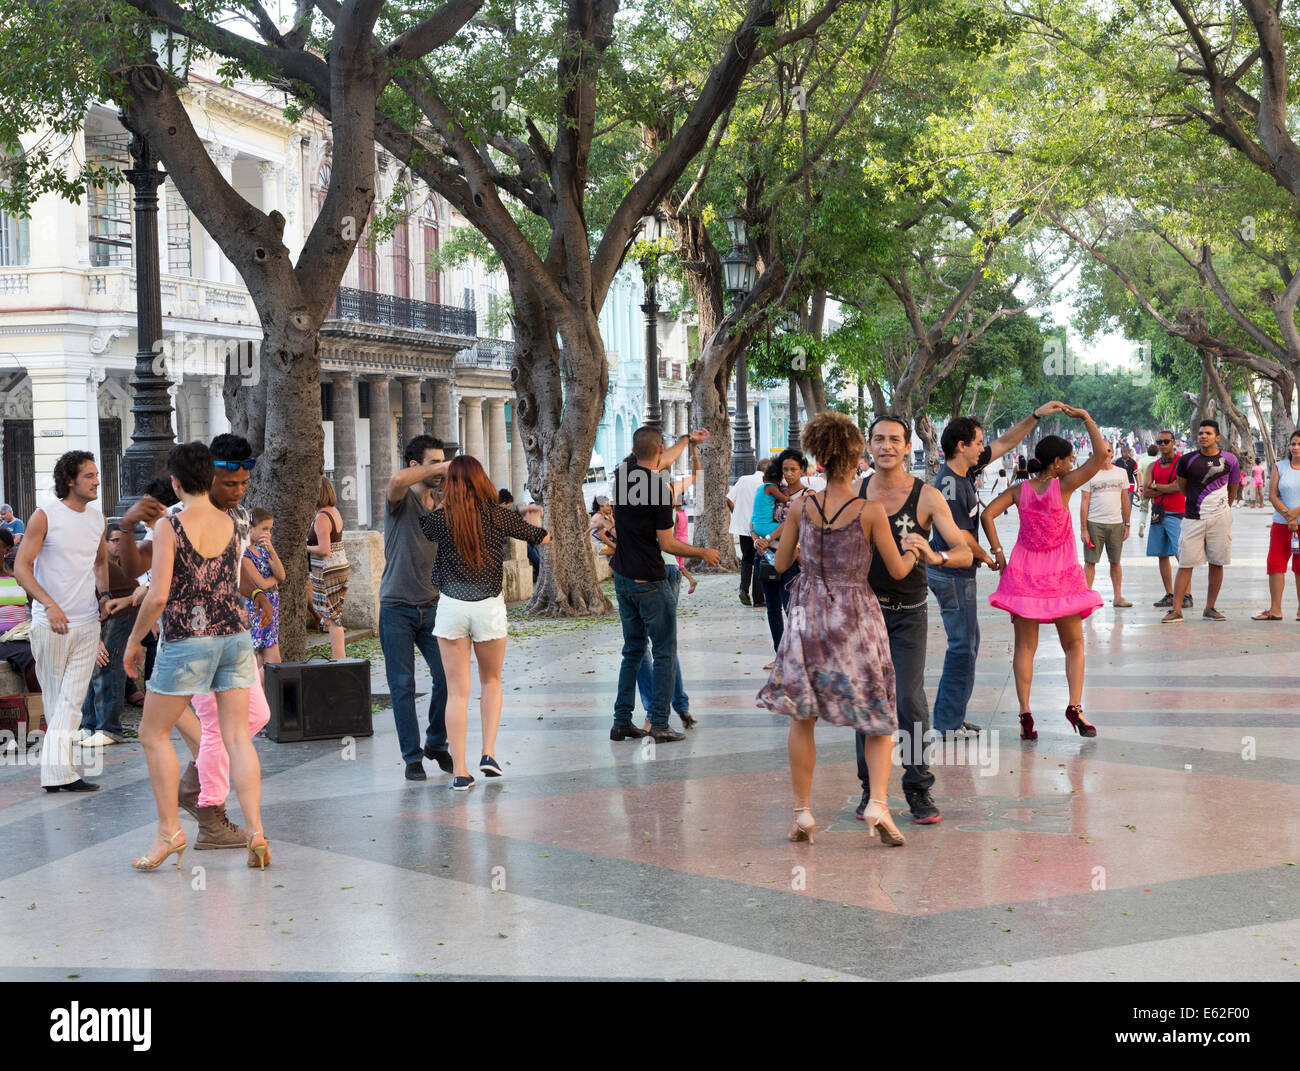 dancers on a Sunday evening, Paseo de Prado avenue, Havana, Cuba Stock Photo